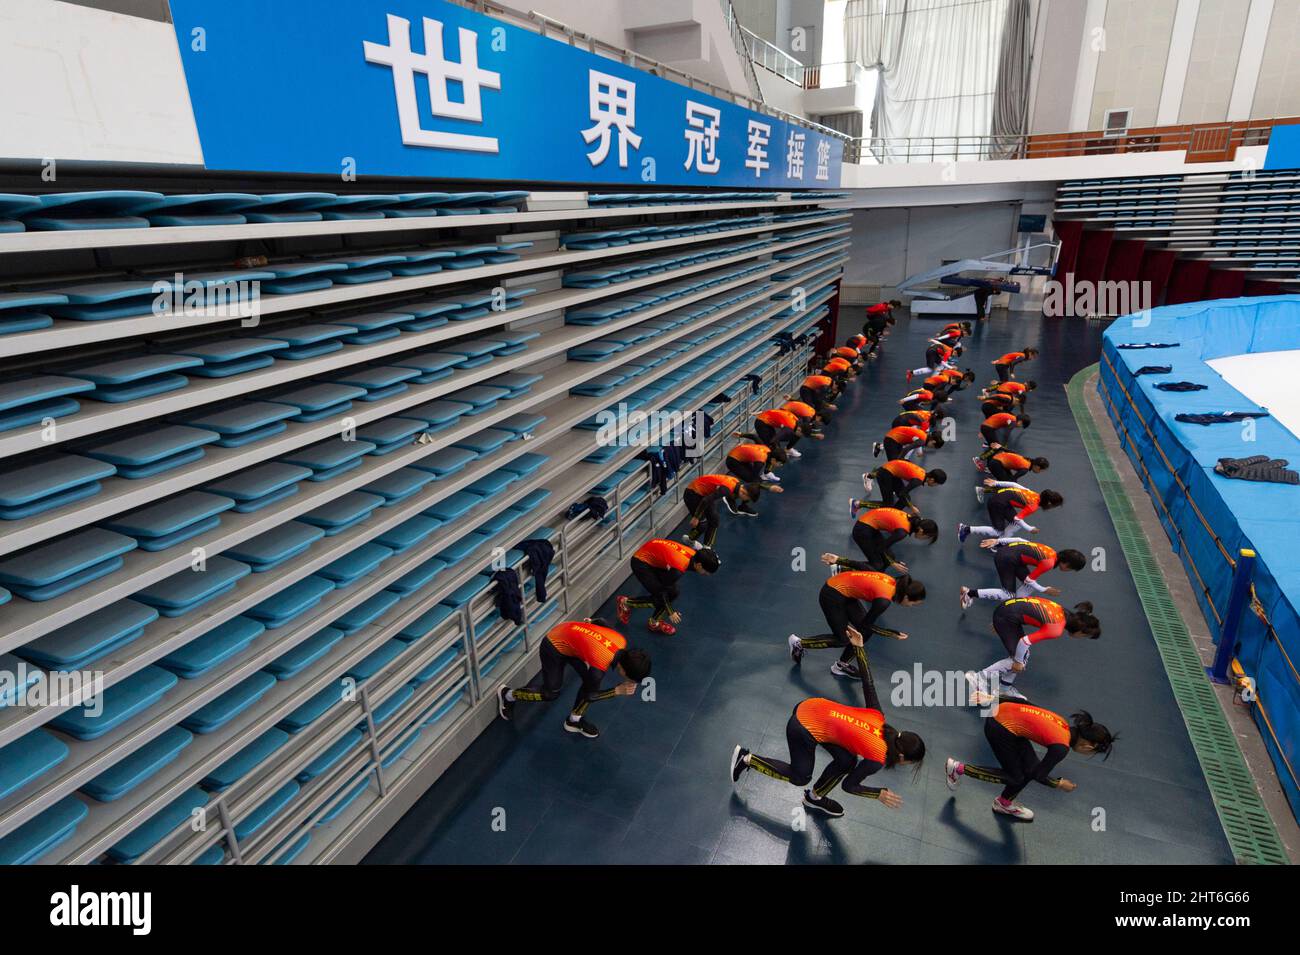 (220227) -- QITAIHE, 27 février 2022 (Xinhua) -- photo prise le 24 février 2022 montre les étudiants d'un collège professionnel qui se réchauffent avant une séance de formation de patinage de vitesse sur piste courte au Qitaihe Sports Center de Qitaihe City, dans la province de Heilongjiang, dans le nord-est de la Chine. À ce jour, 7 des 22 médailles d'or olympiques d'hiver de Chine ont été revendiquées par des athlètes formés à Qitaihe City. Ces dernières années, la ville a intensié ses efforts pour former les talents des sports d'hiver en construisant des écoles qui offrent une formation de patinage de vitesse sur piste courte, en établissant une base d'entraînement pour les équipes sportives provinciales et en tenant de la glace Banque D'Images